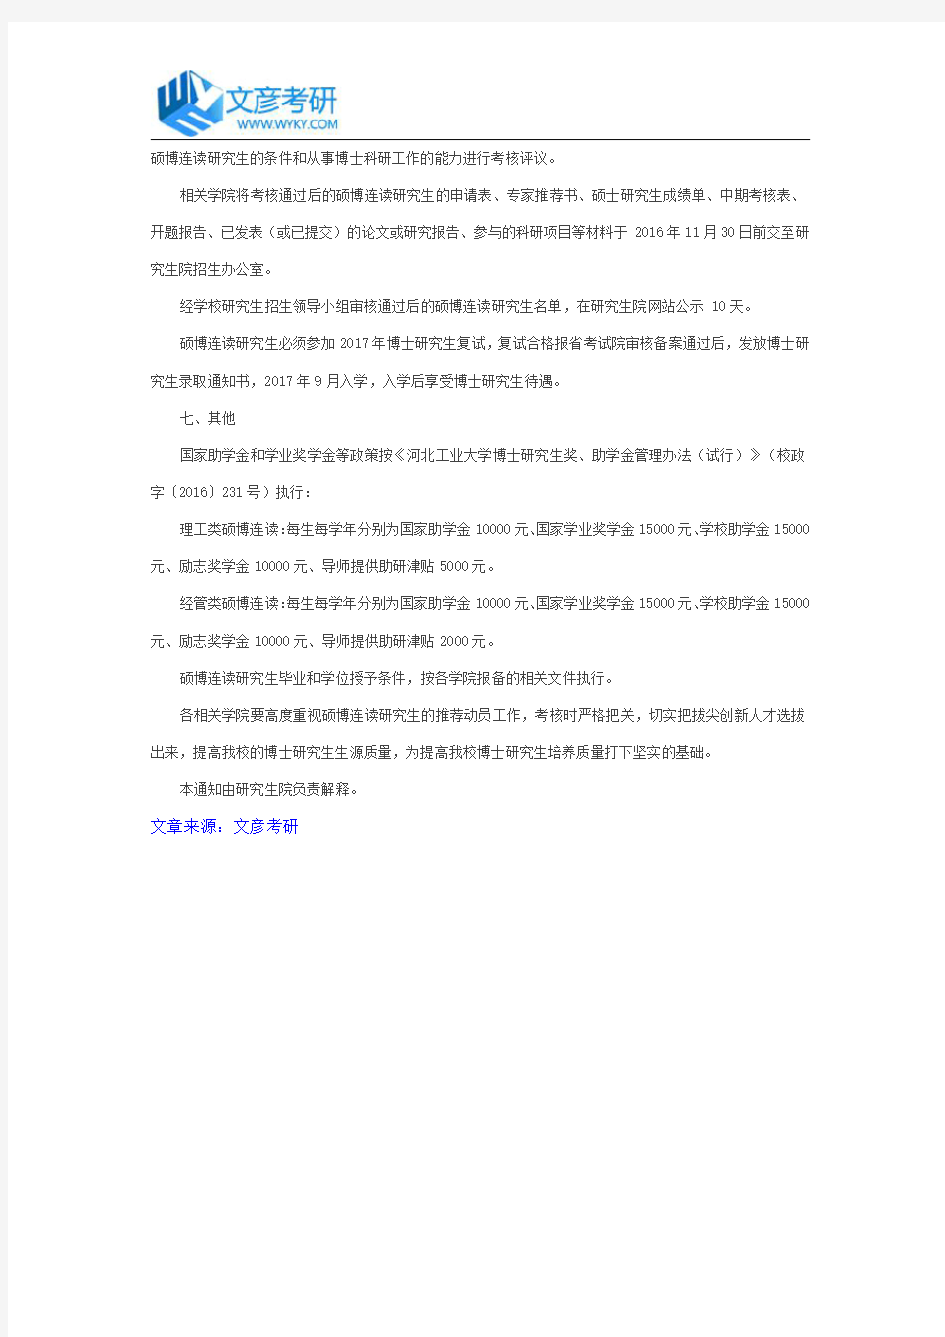 河北工业大学2017年硕博连读研究生推荐选拔工作的通知